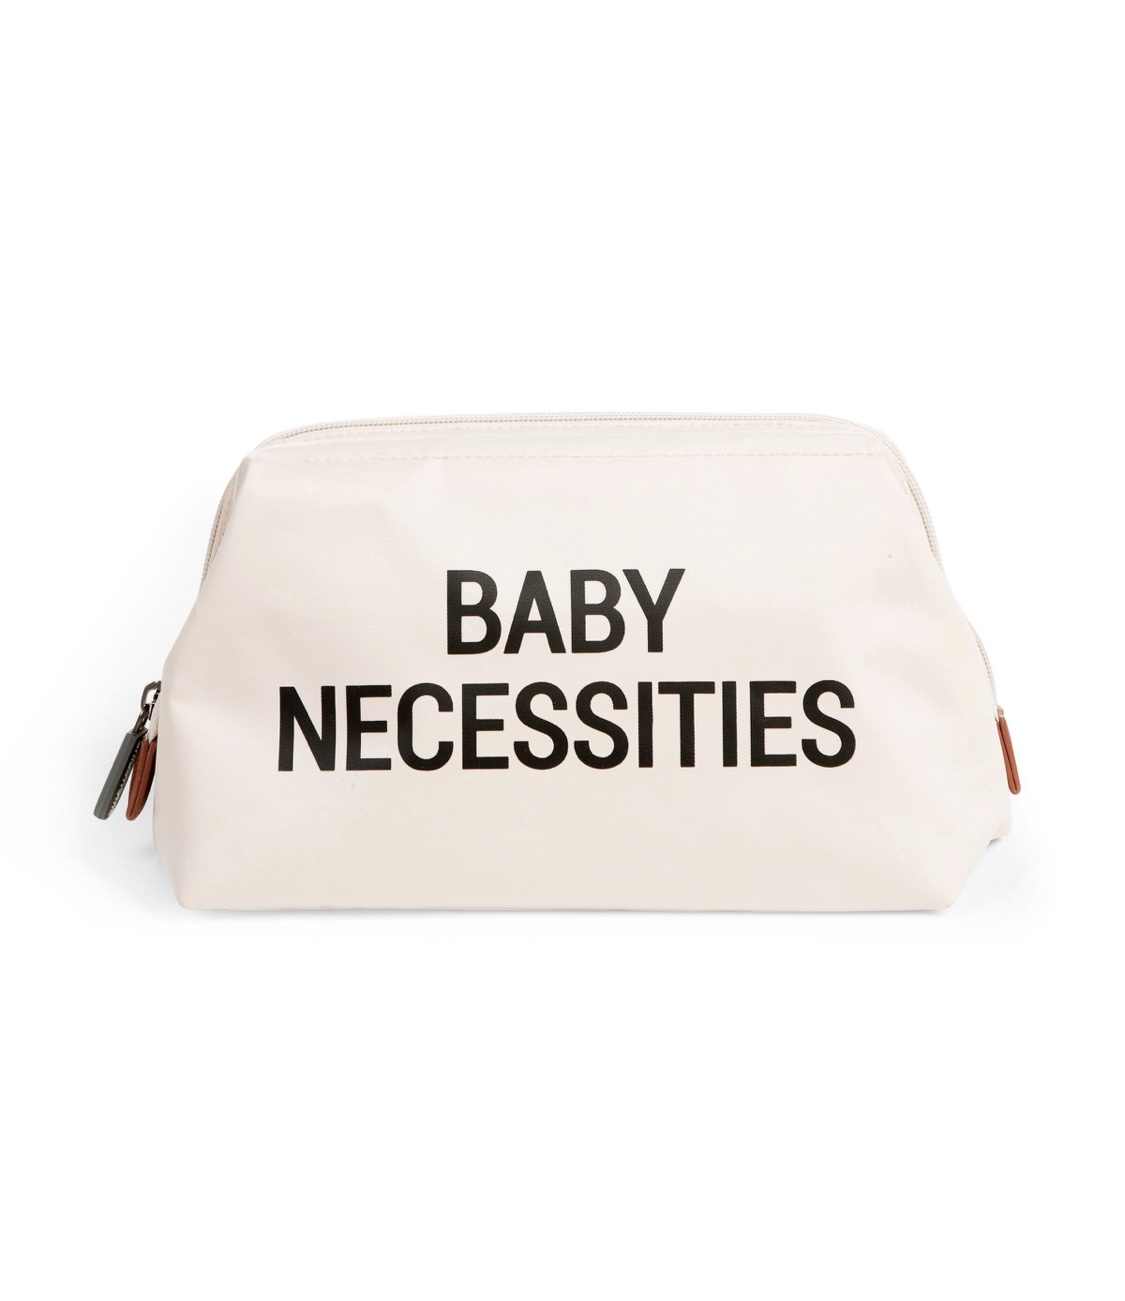 Baby Necessities Trousse De Toilette – White.